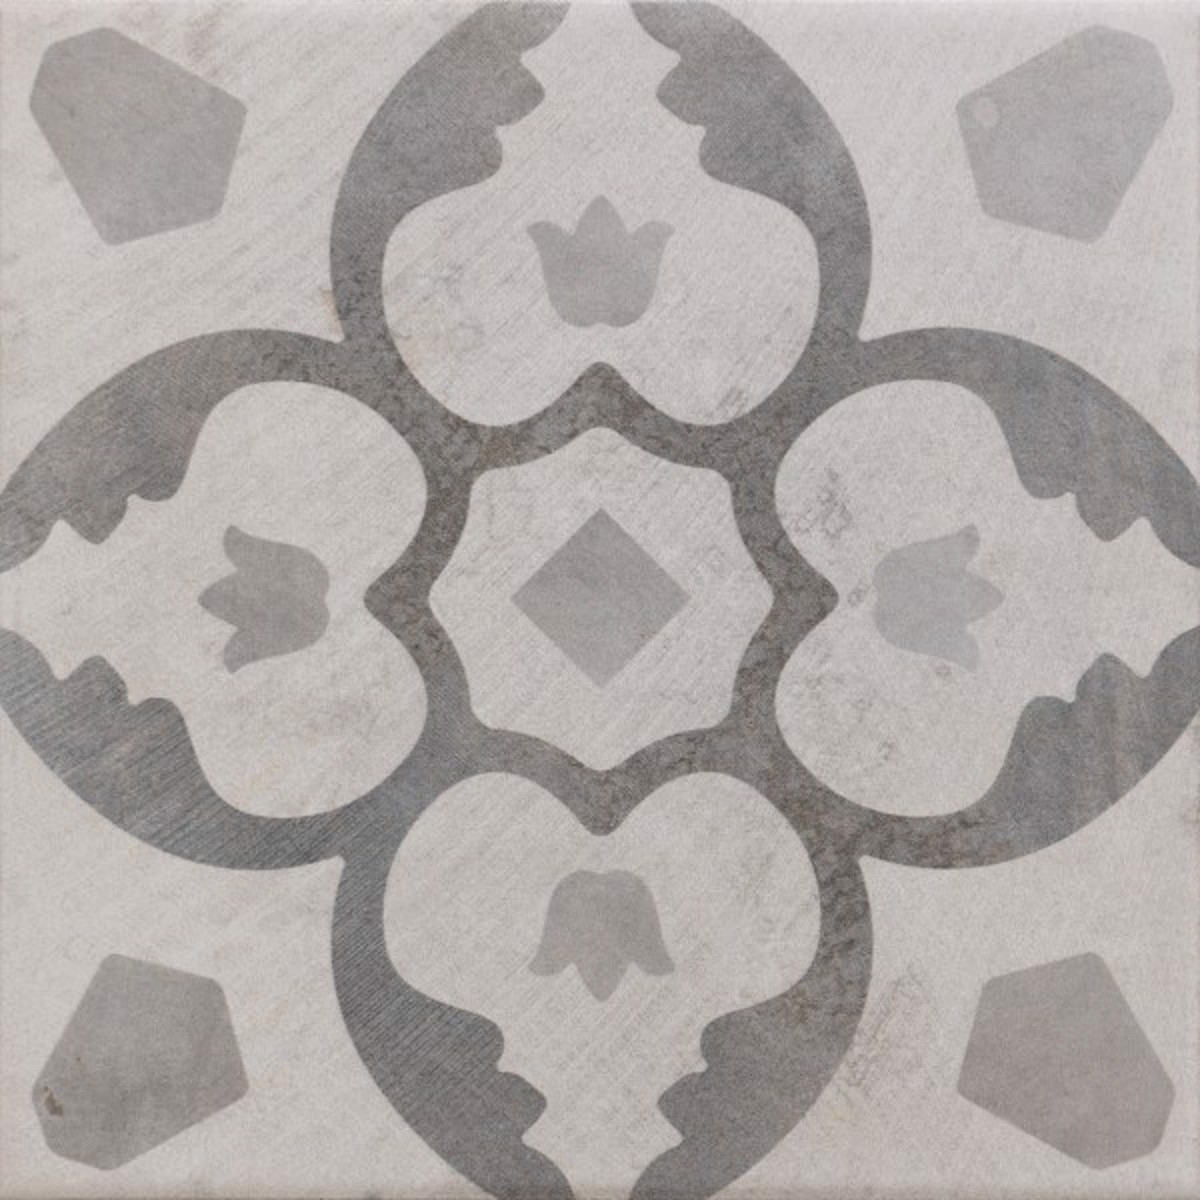 floor tiles wall tiles Caspf00011386 8"X8" Ceramic Porcelain Tiles